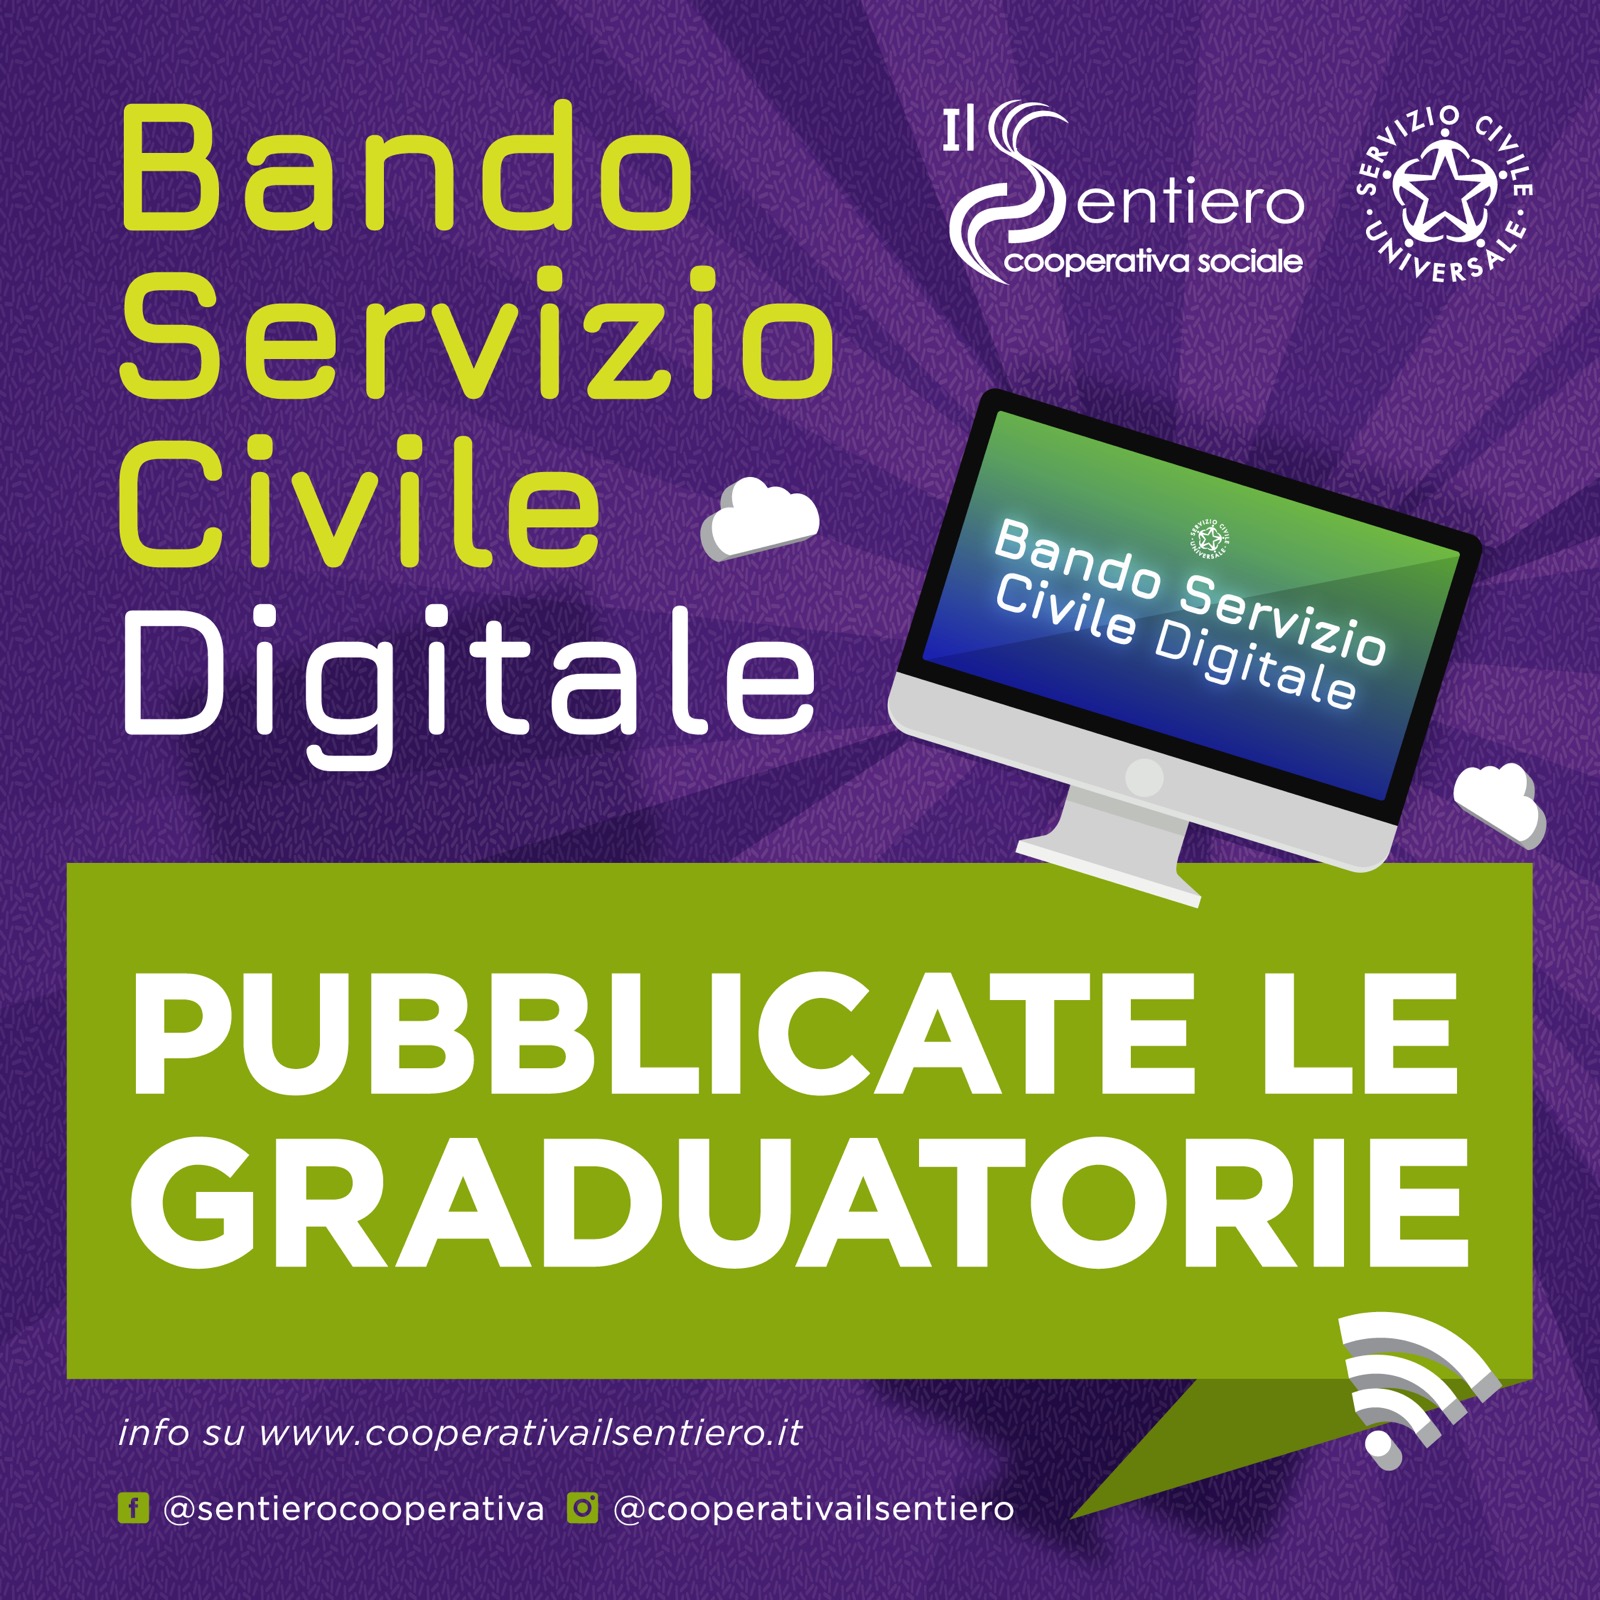 Servizio Civile Digitale: Pubblicate le Graduatorie